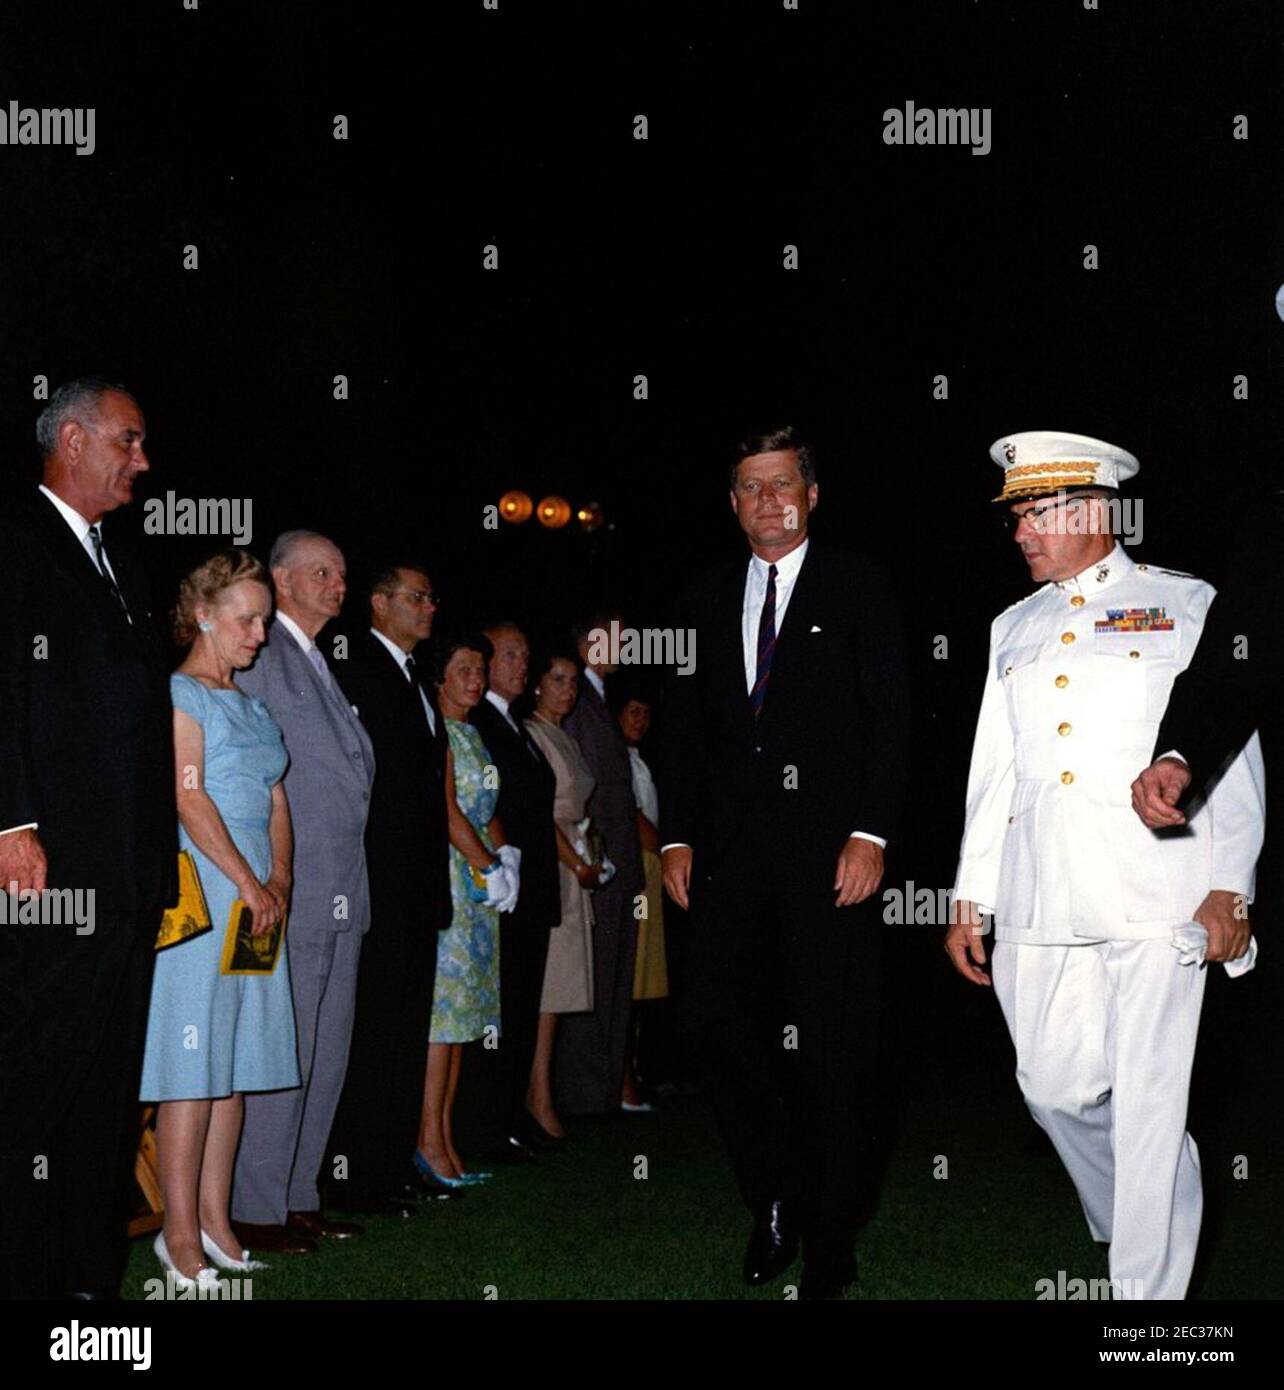 El Presidente Kennedy ve el Desfile nocturno de la Corpsu0027 de Marina, en el Cuartel Marino de Washington, D.C. (8th u0026 I Streets, se), 9:00PM. El presidente John F. Kennedy asiste a un desfile nocturno en el Marine Barracks (u201c8th u0026 Iu201d) en Washington, D.C. el comandante del cuerpo de Marines de los Estados Unidos, el general David M. Shoup, camina a la derecha. De pie a la izquierda (L-R): Vicepresidente Lyndon B. Johnson; Zola Shoup; Congresista Carl Vinson (Georgia); Secretario de Defensa, Robert S. McNamara; Margaret Craig McNamara; Postmaster General, J. Edward Day; Mary Louise Day; Directora de la Oficina del Foto de stock